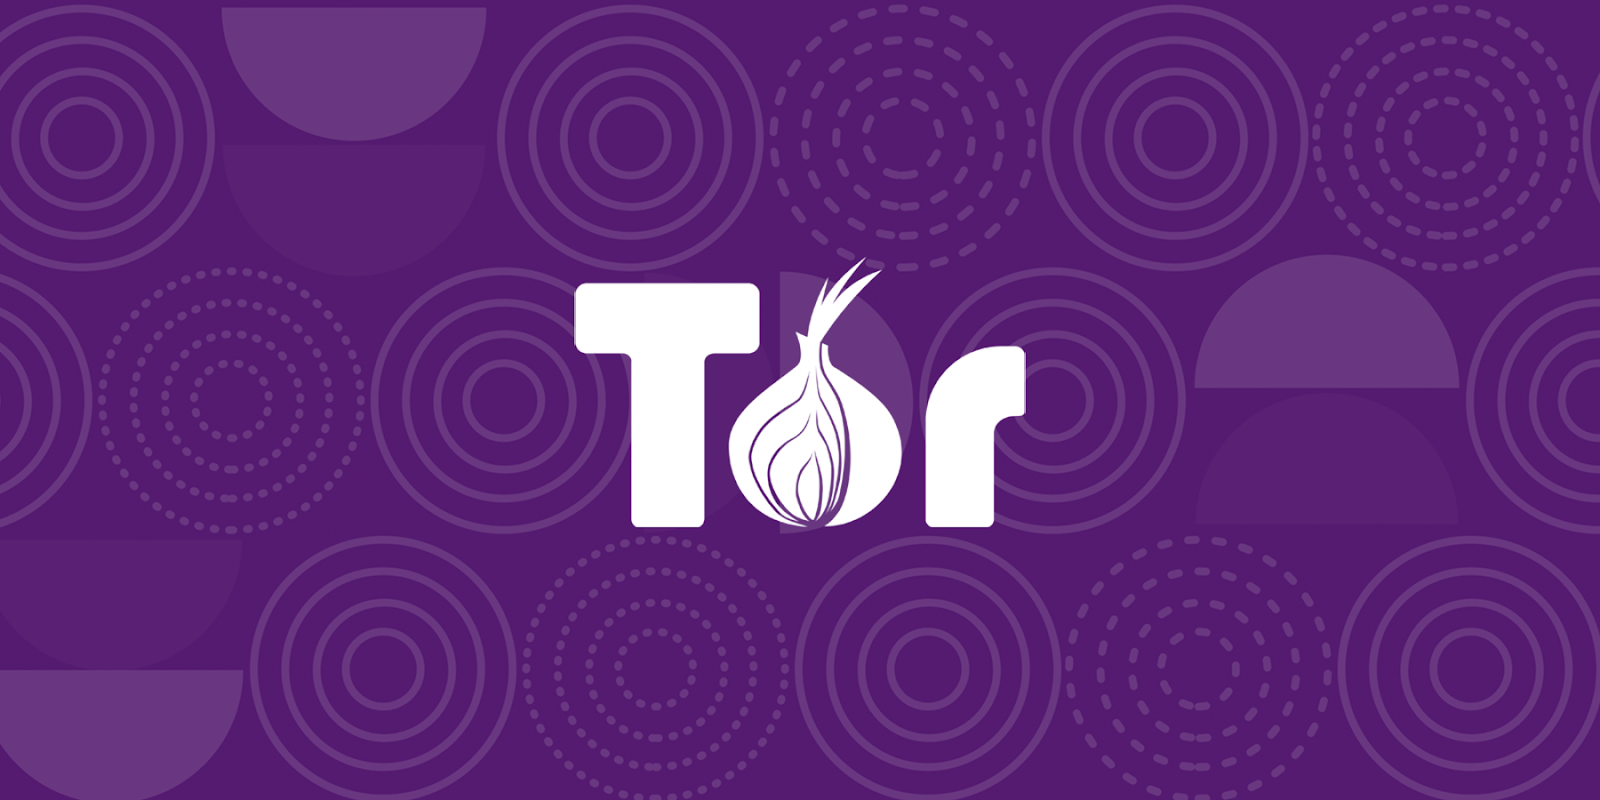 1. Tor tarayıcısı